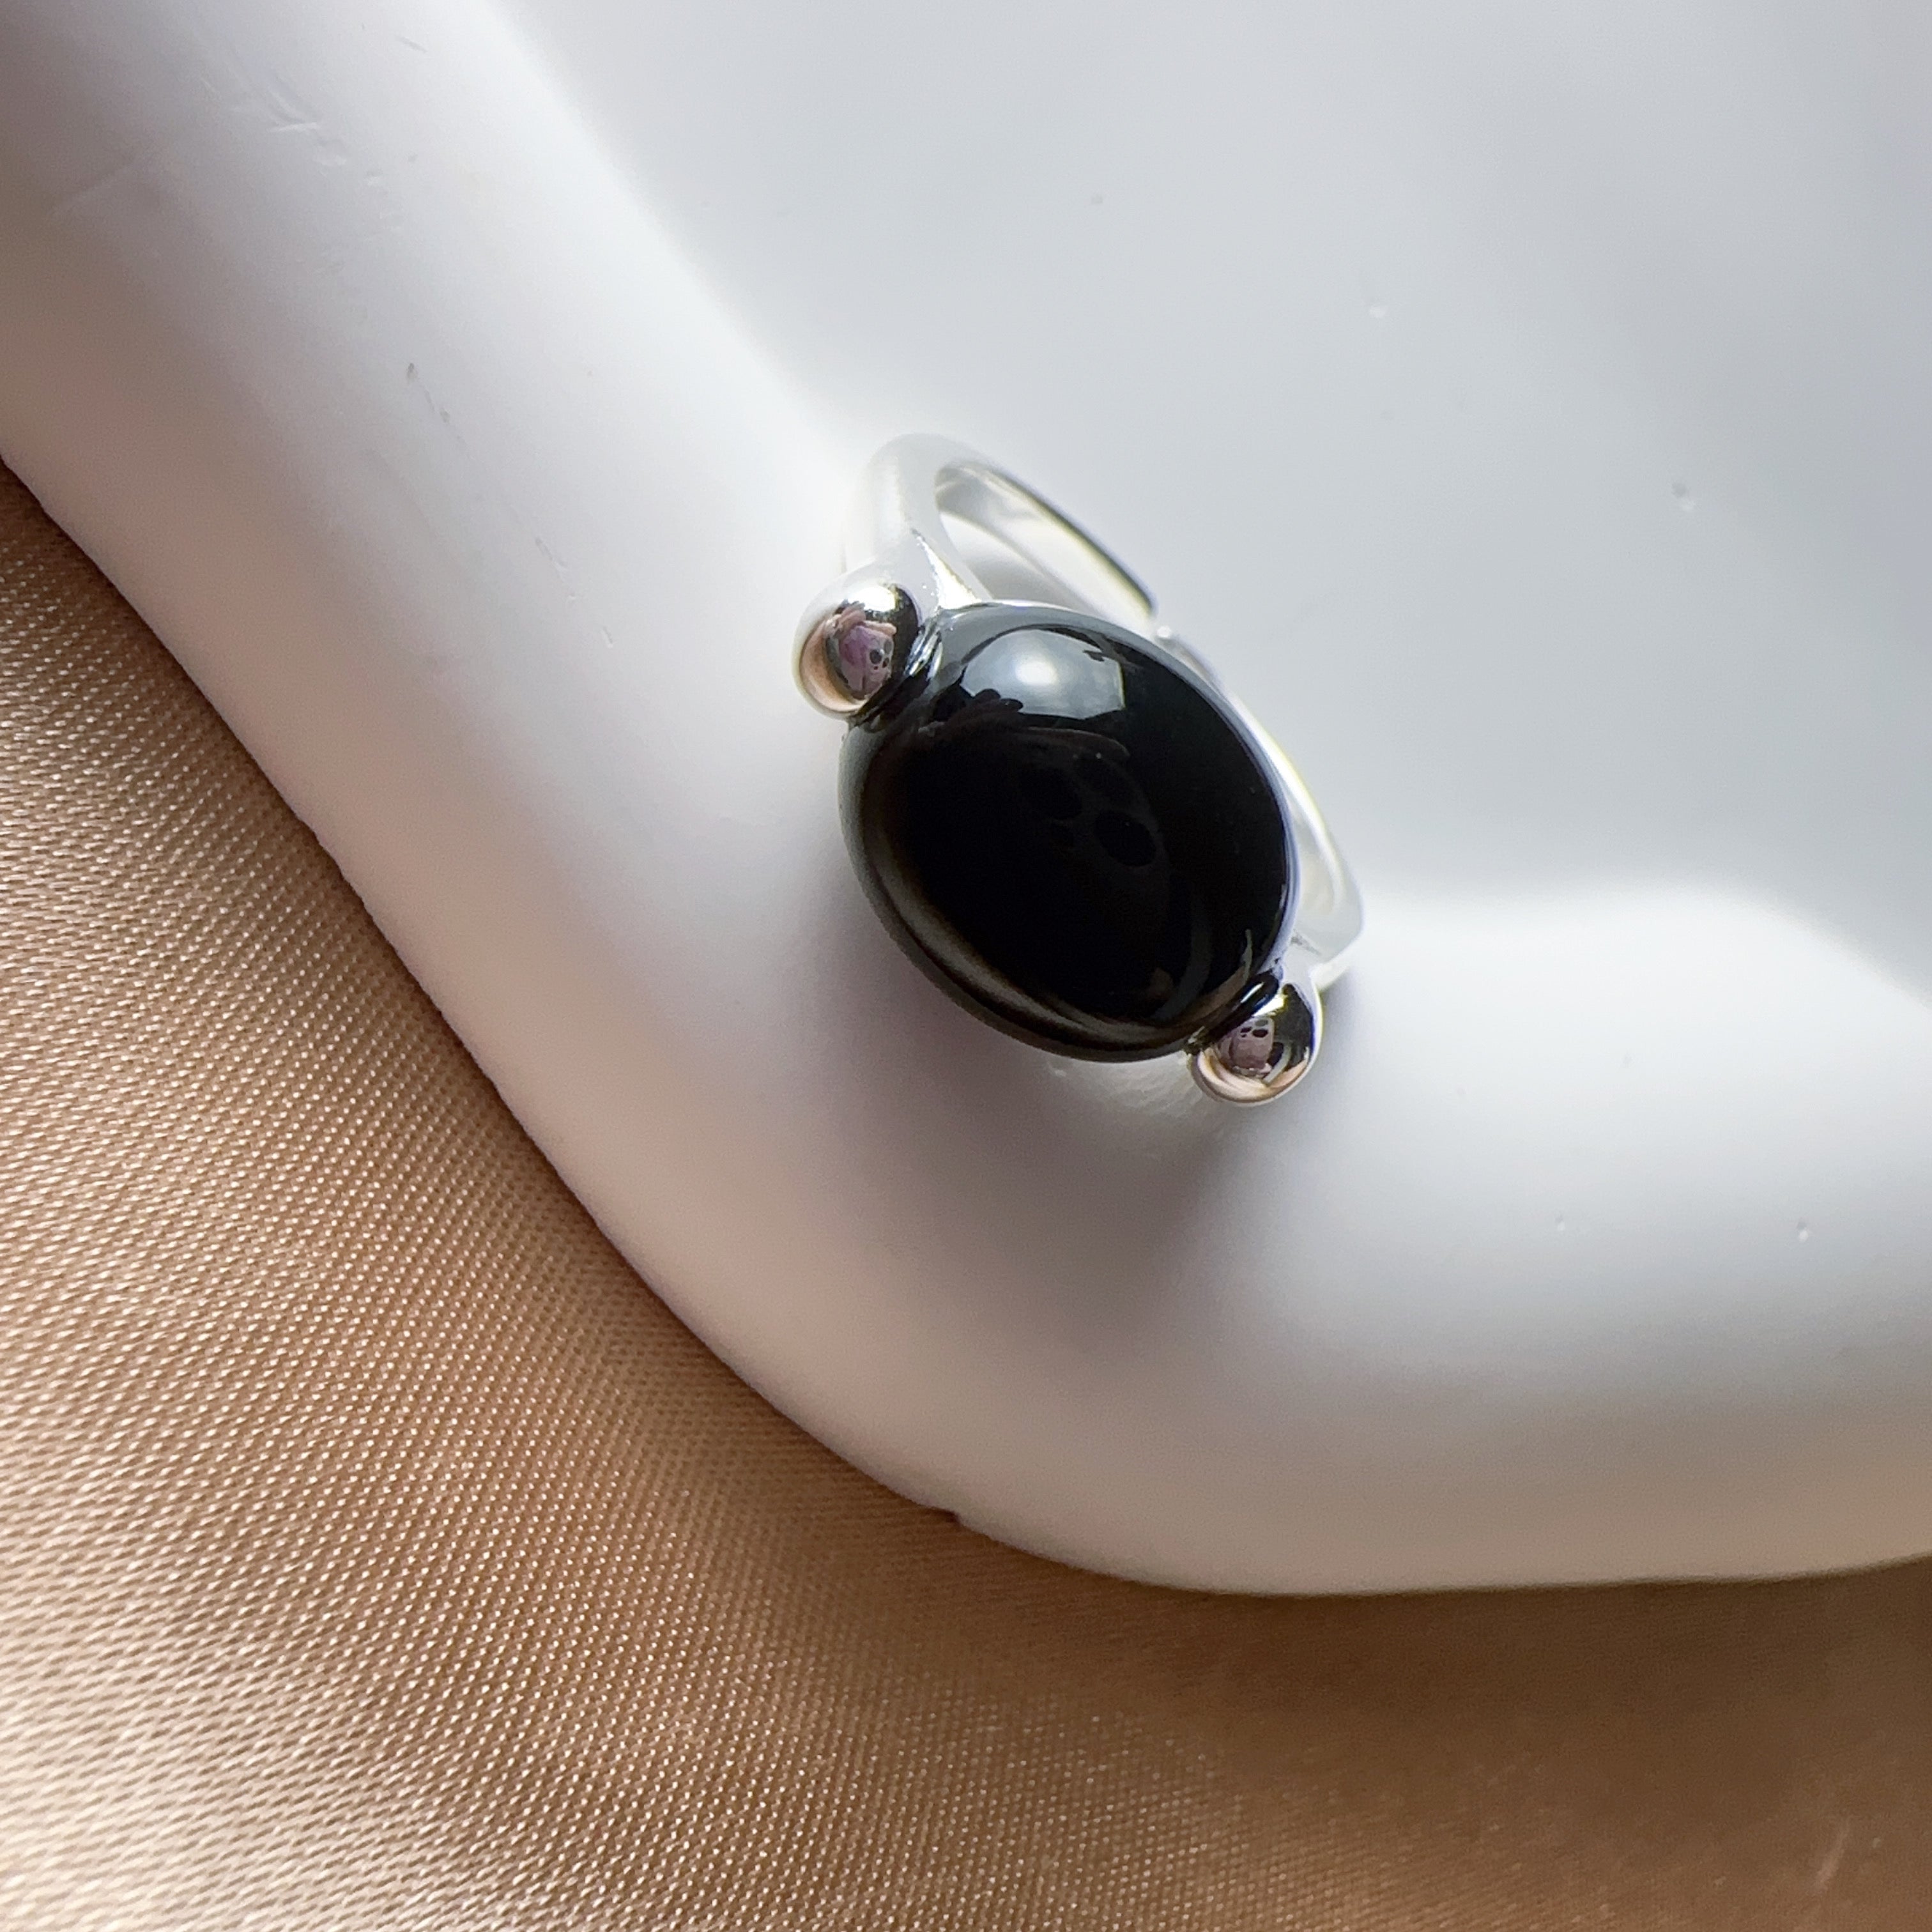 S925 Black Agate Ring (Elegant) Adjustable Ring Size